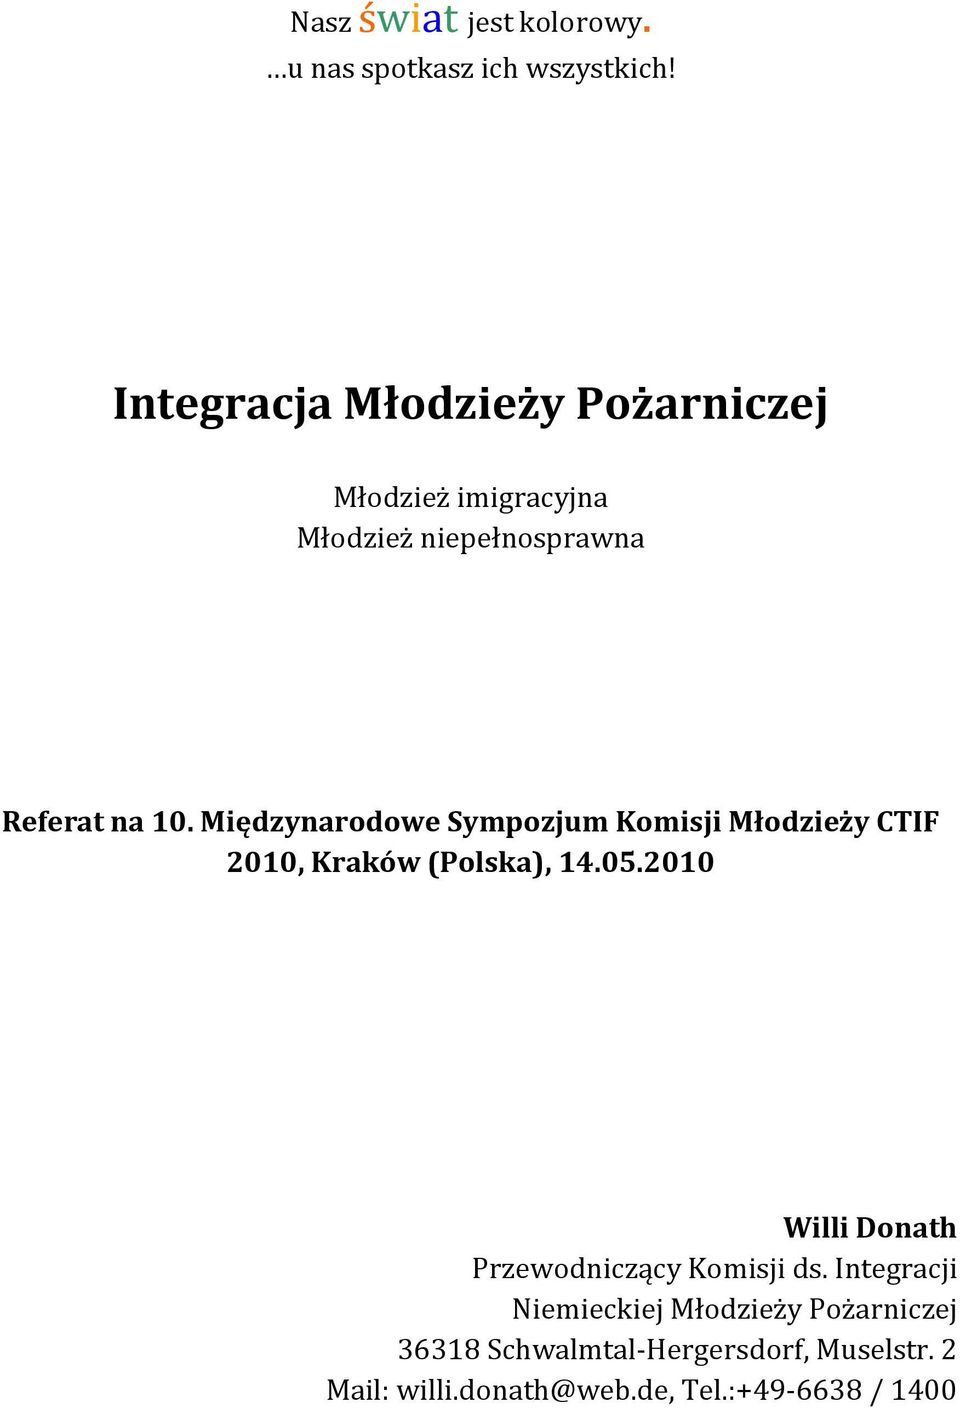 Międzynarodowe Sympozjum Komisji Młodzieży CTIF 2010, Kraków (Polska), 14.05.